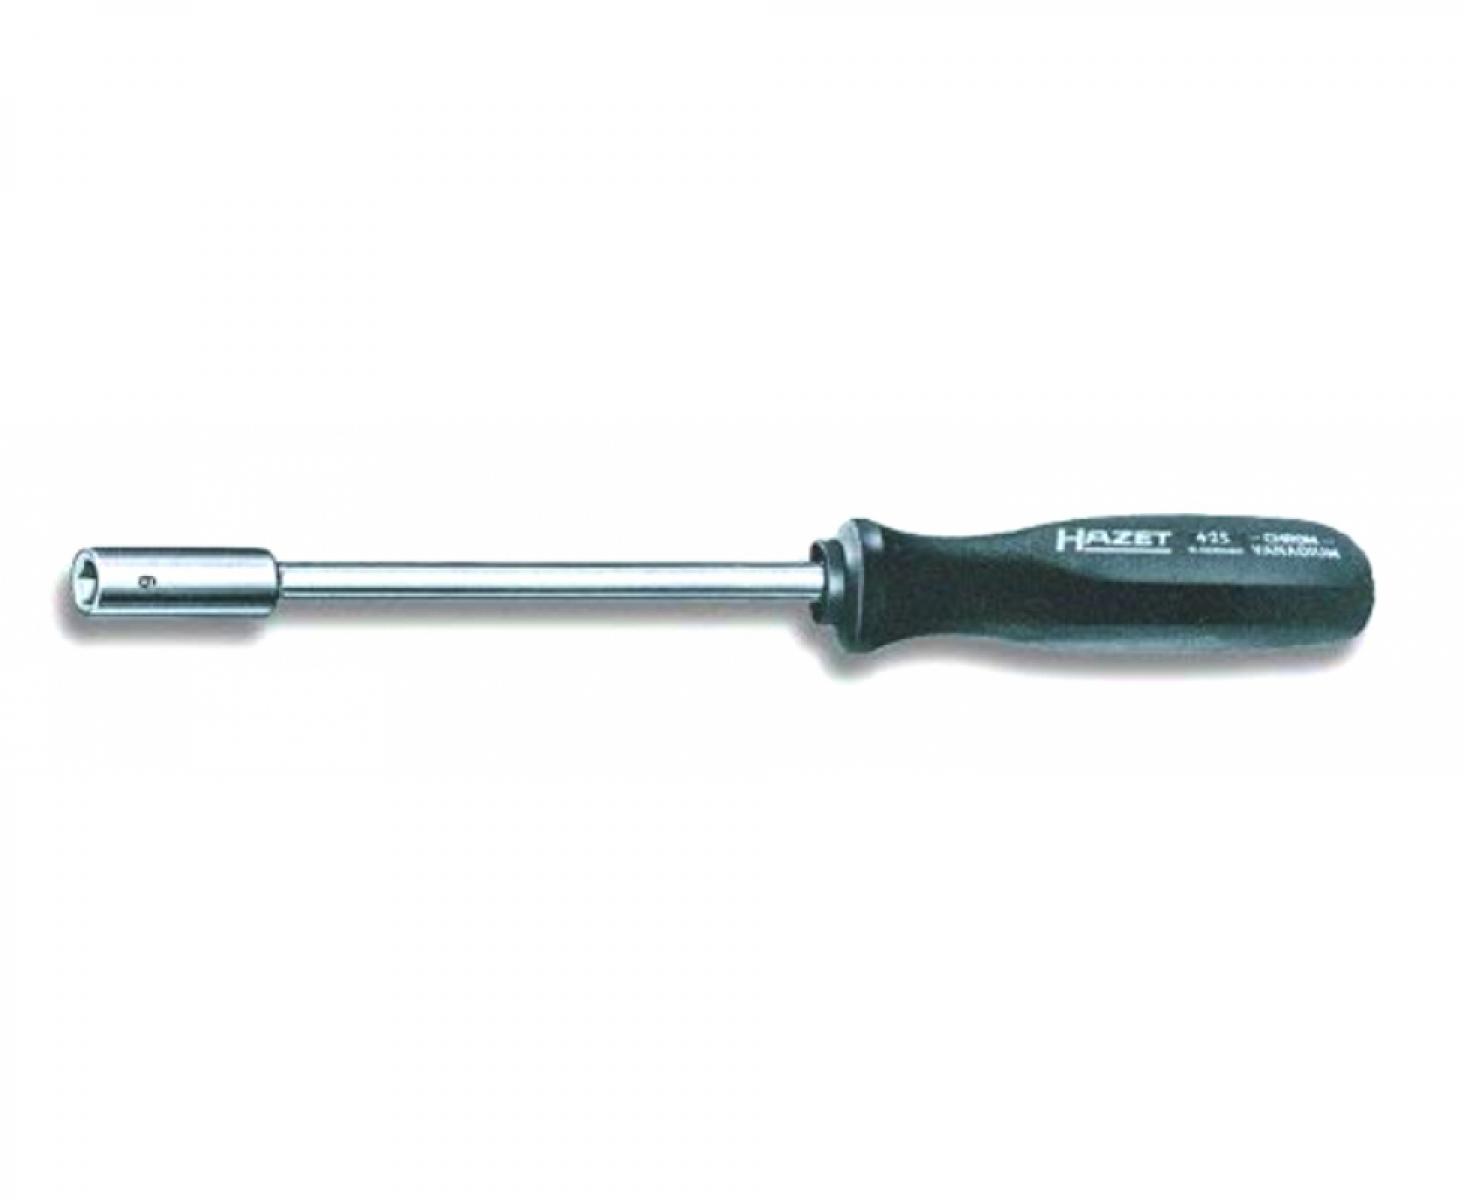 Отвертка-торцовый ключ HEX Nut 5х125 мм Hazet 425-5